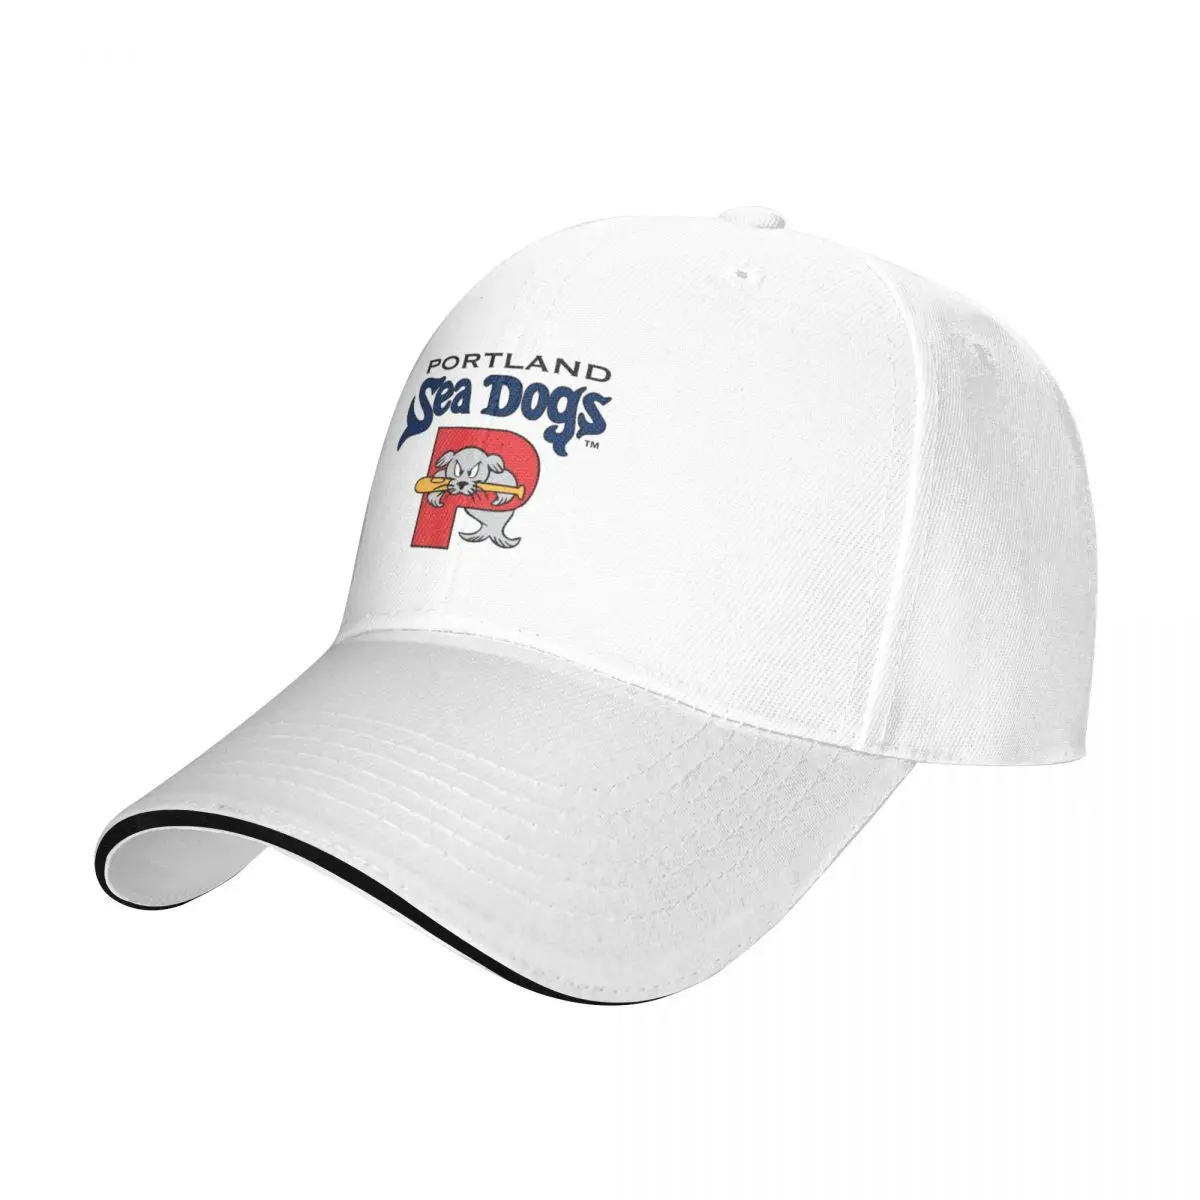 

Portland of Sea Dogs Baseball Cap Vintage sun hat Women's Hats Men's